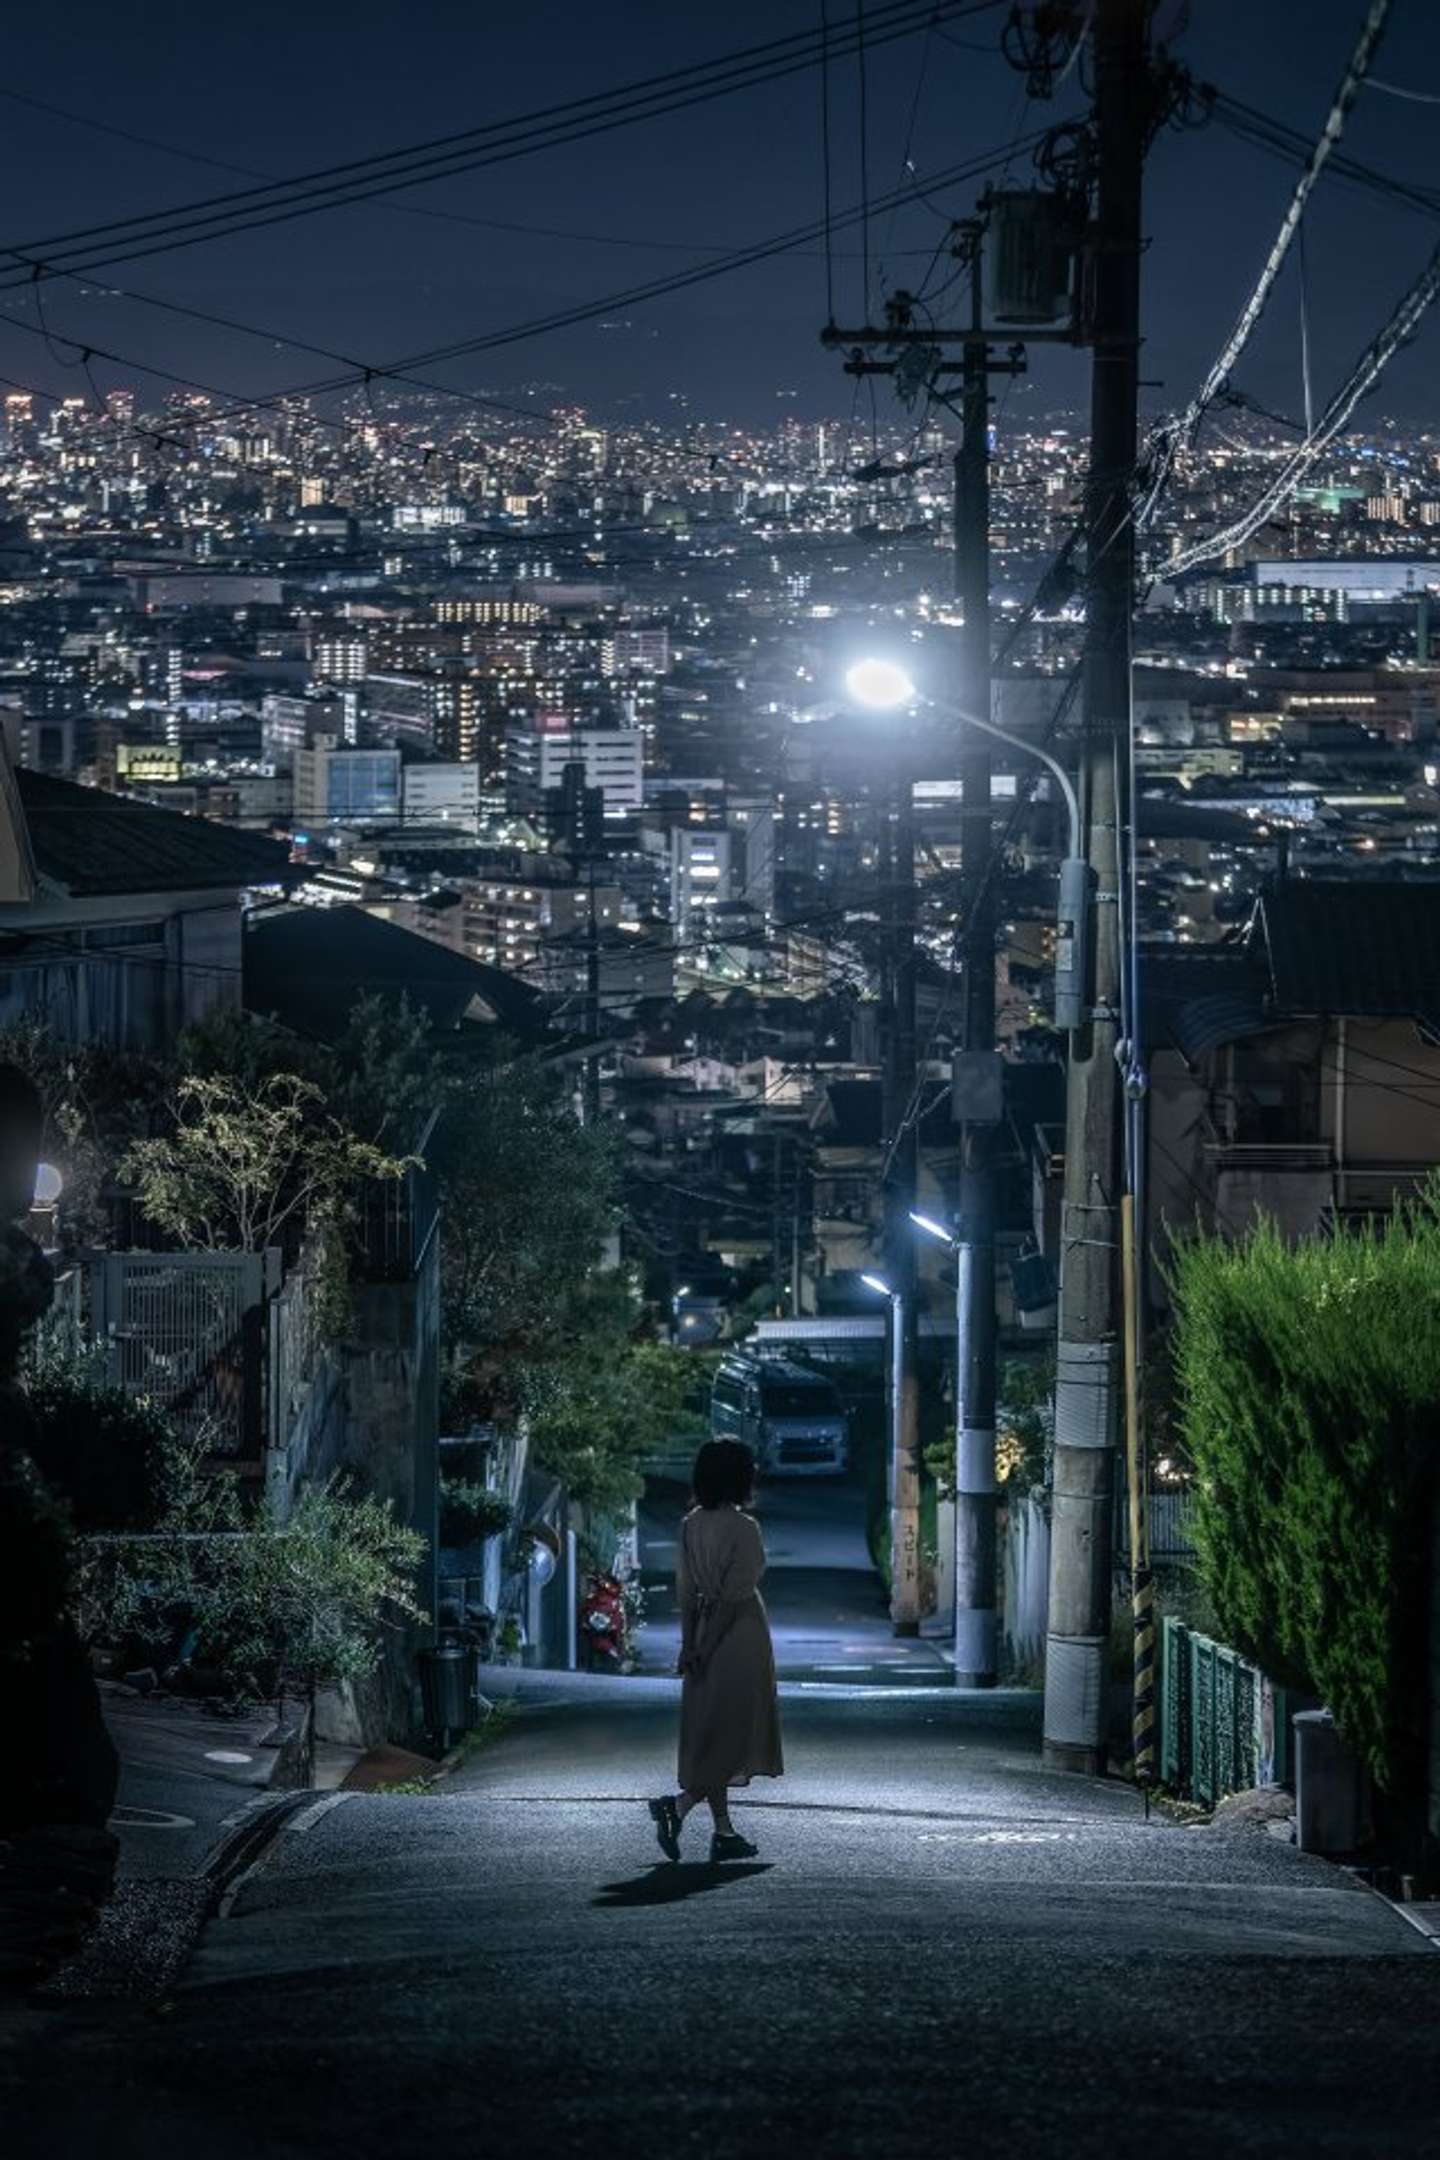 めちゃくちゃ素敵な場所」「エモい」 ありふれた路地の奥には超絶景...東大阪の隠れた名スポットが話題に (2022年10月12日) -  エキサイトニュース